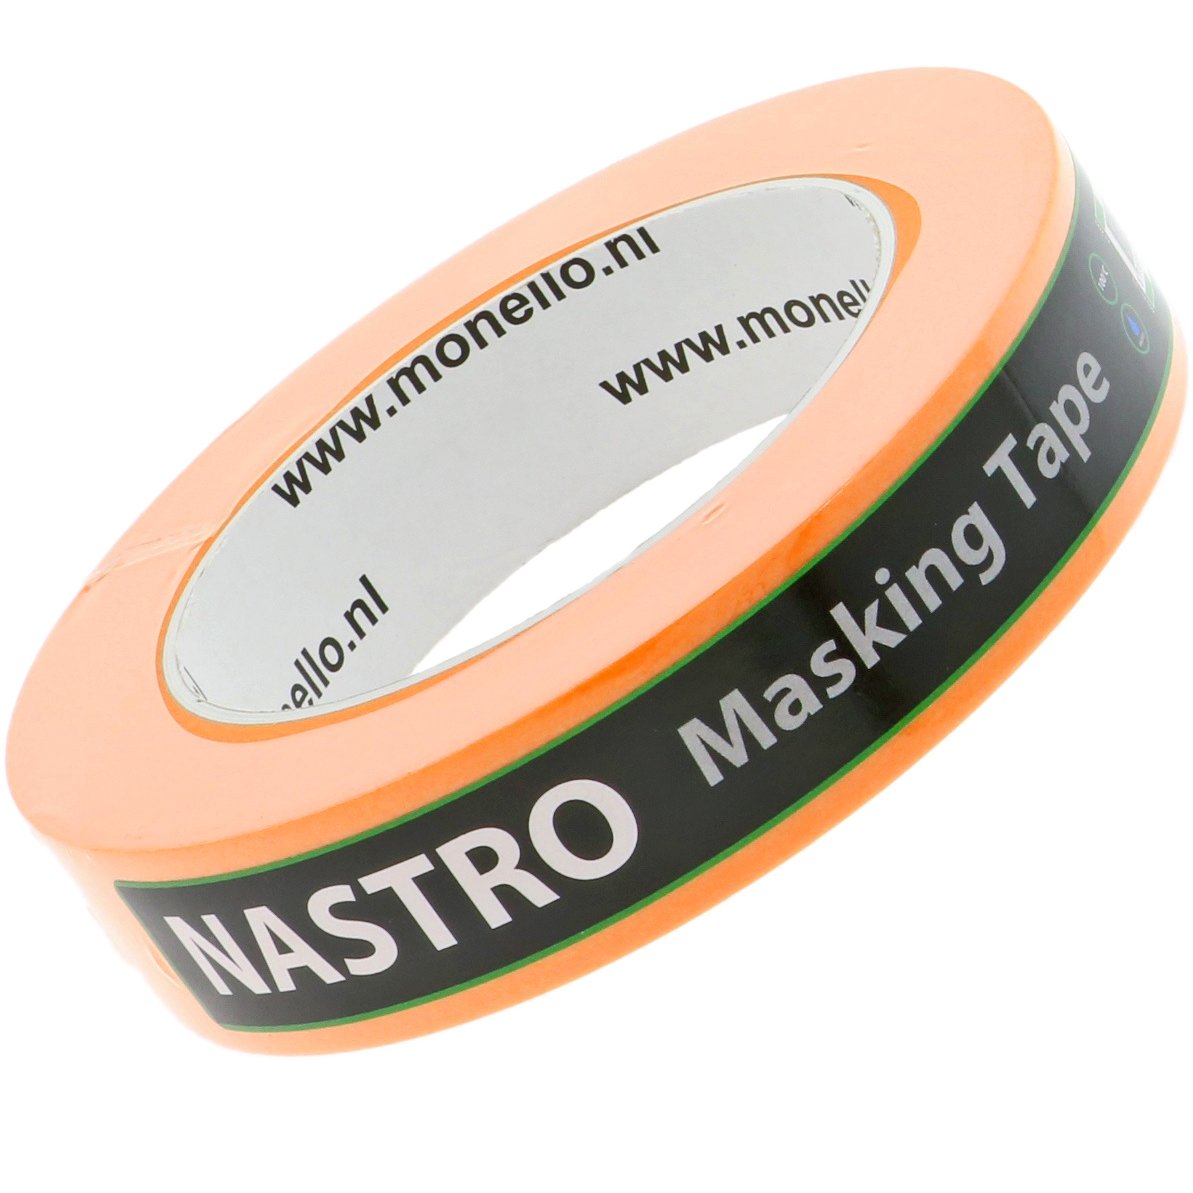 Nastro Masking Tape 25mm